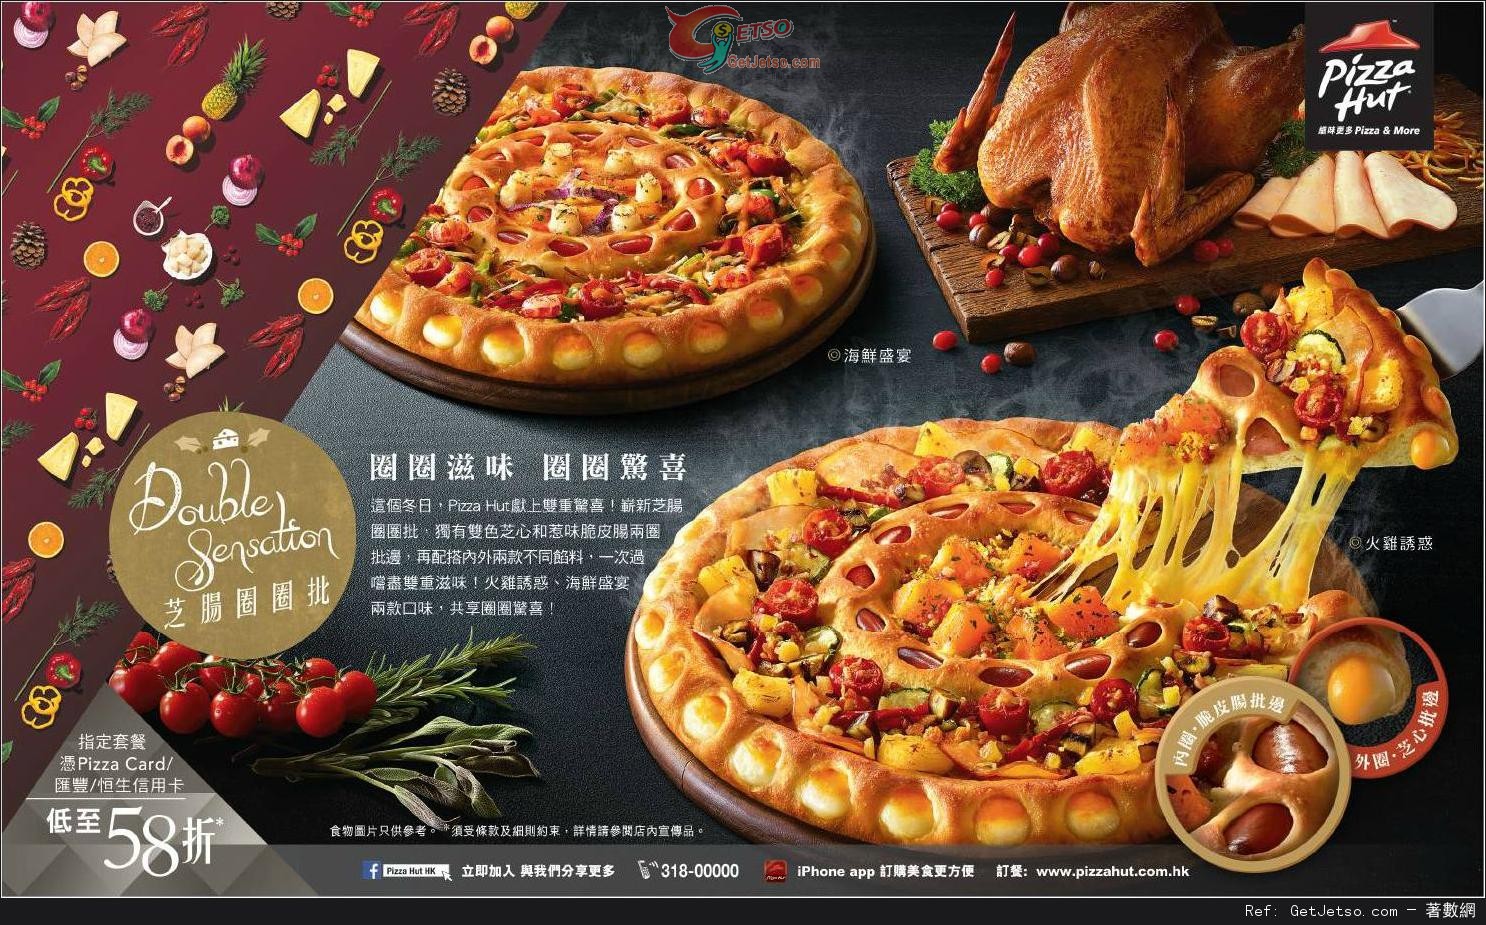 滙豐/恒生信用卡享Pizza Hut 指定套餐低至58折優惠(至14年12月31日)圖片1